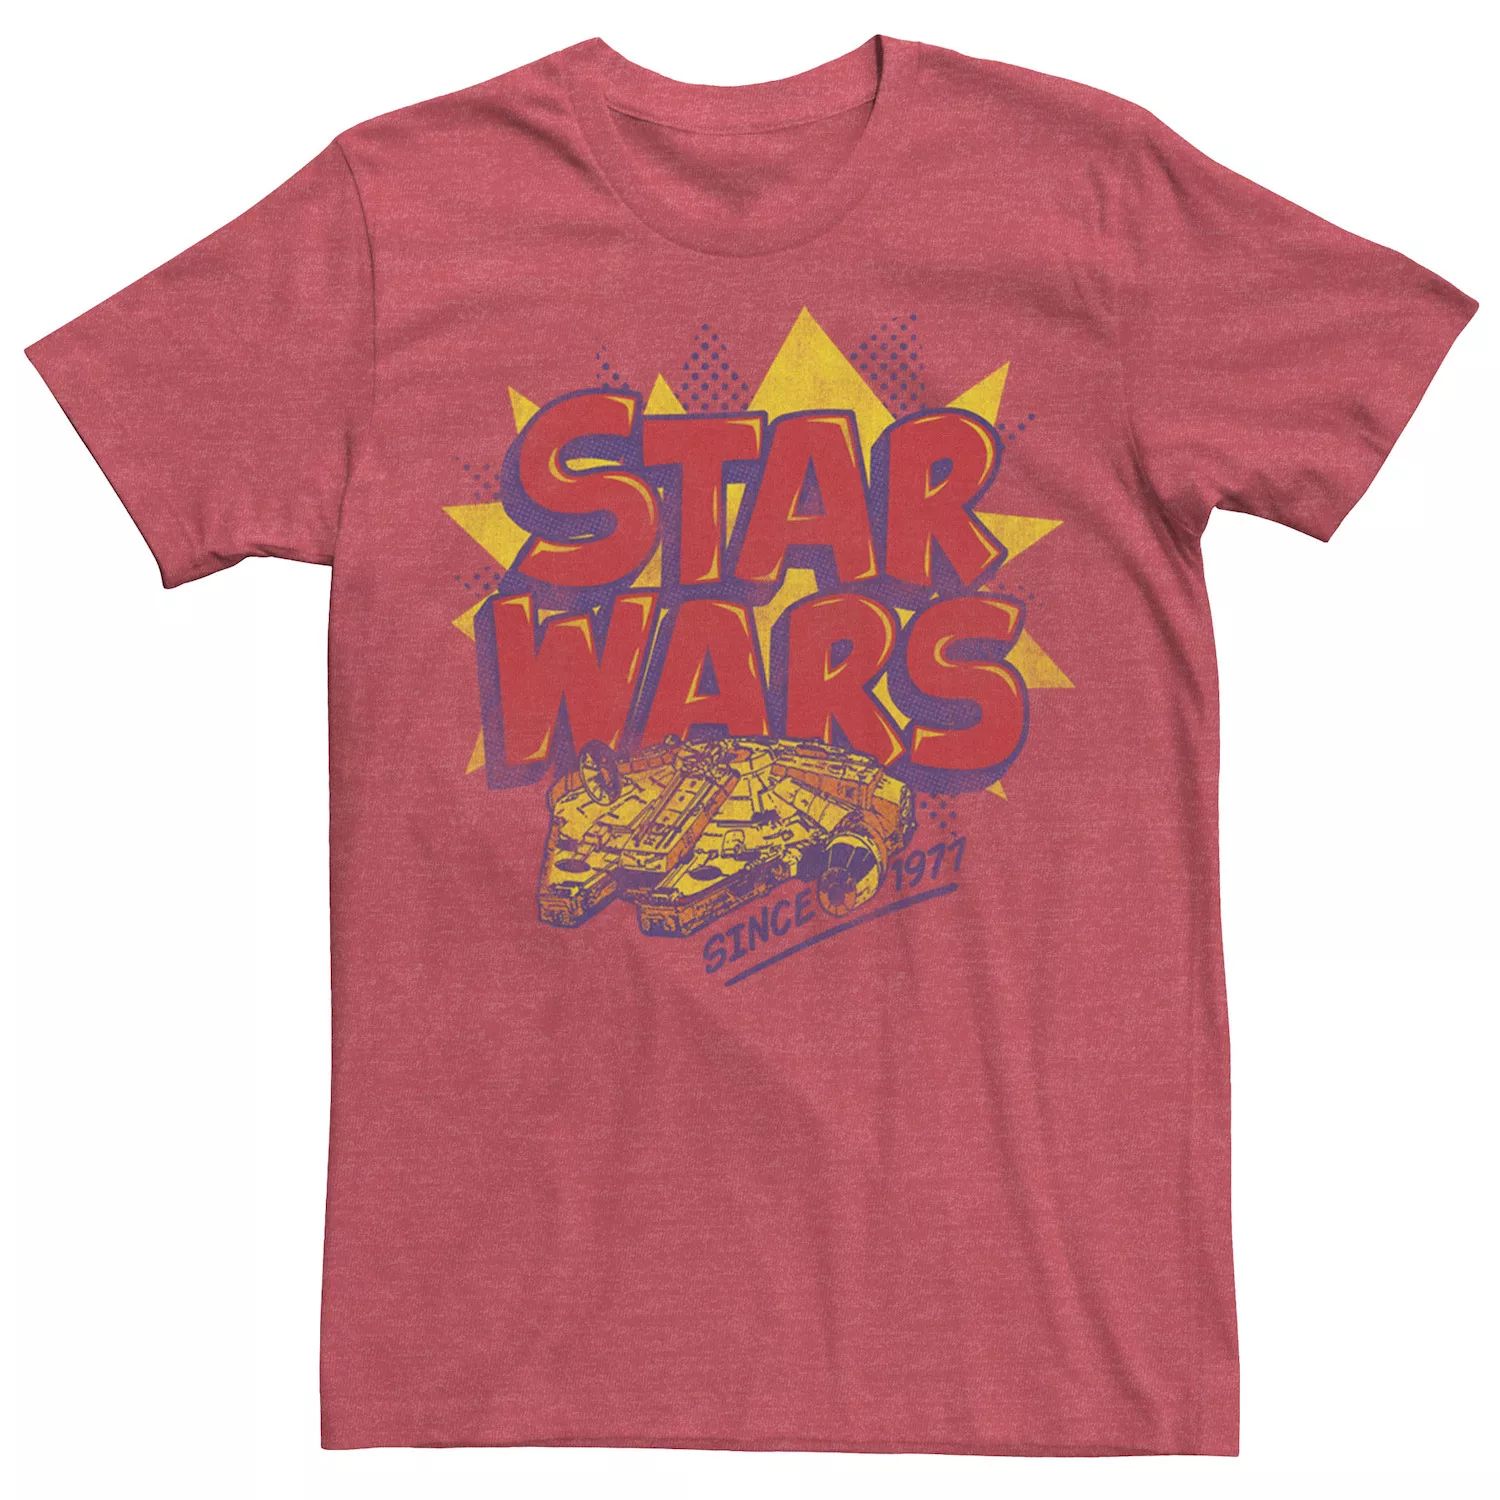 Мужская футболка с логотипом комиксов «Звездные войны: Сокол тысячелетия» Star Wars мужская футболка с изображением кореллианского торгового корабля сокол тысячелетия star wars